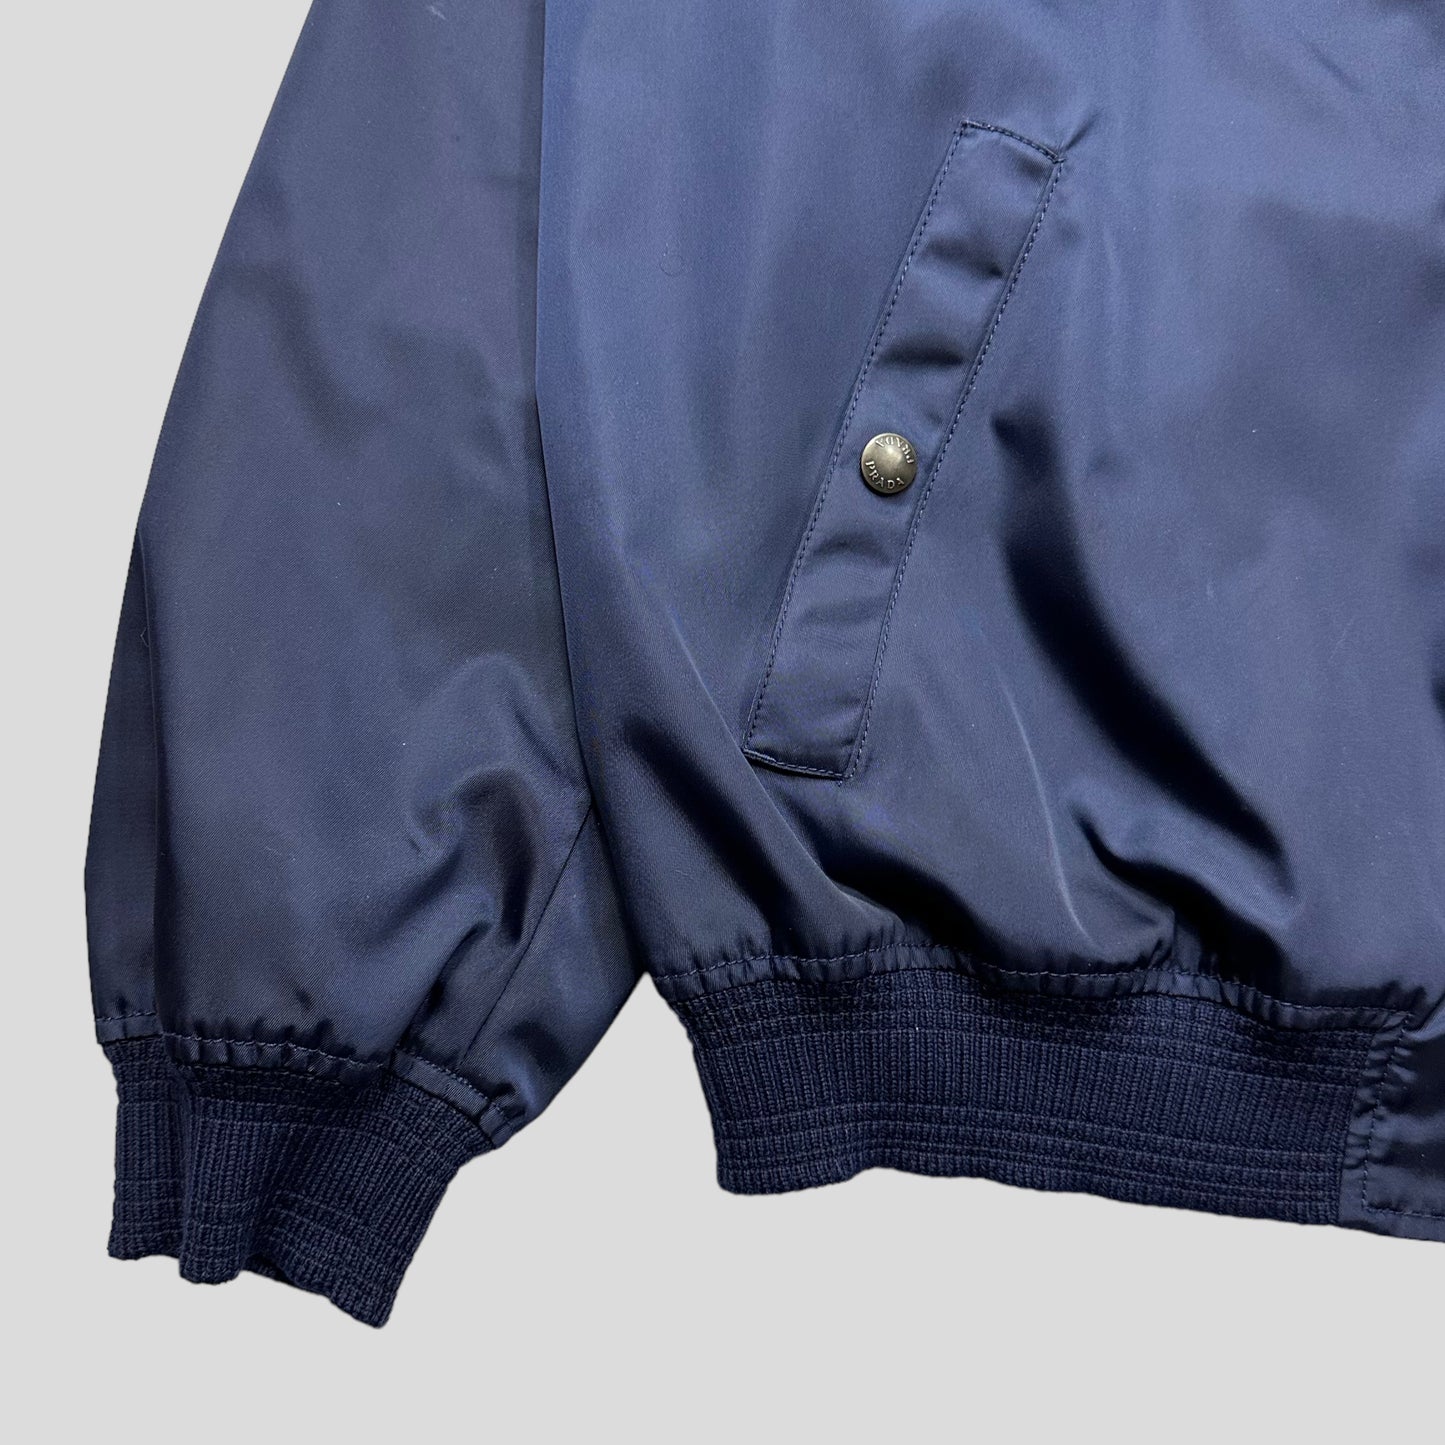 Prada Milano 2015 Metallic Blue Nylon Bomber Jacket - IT54